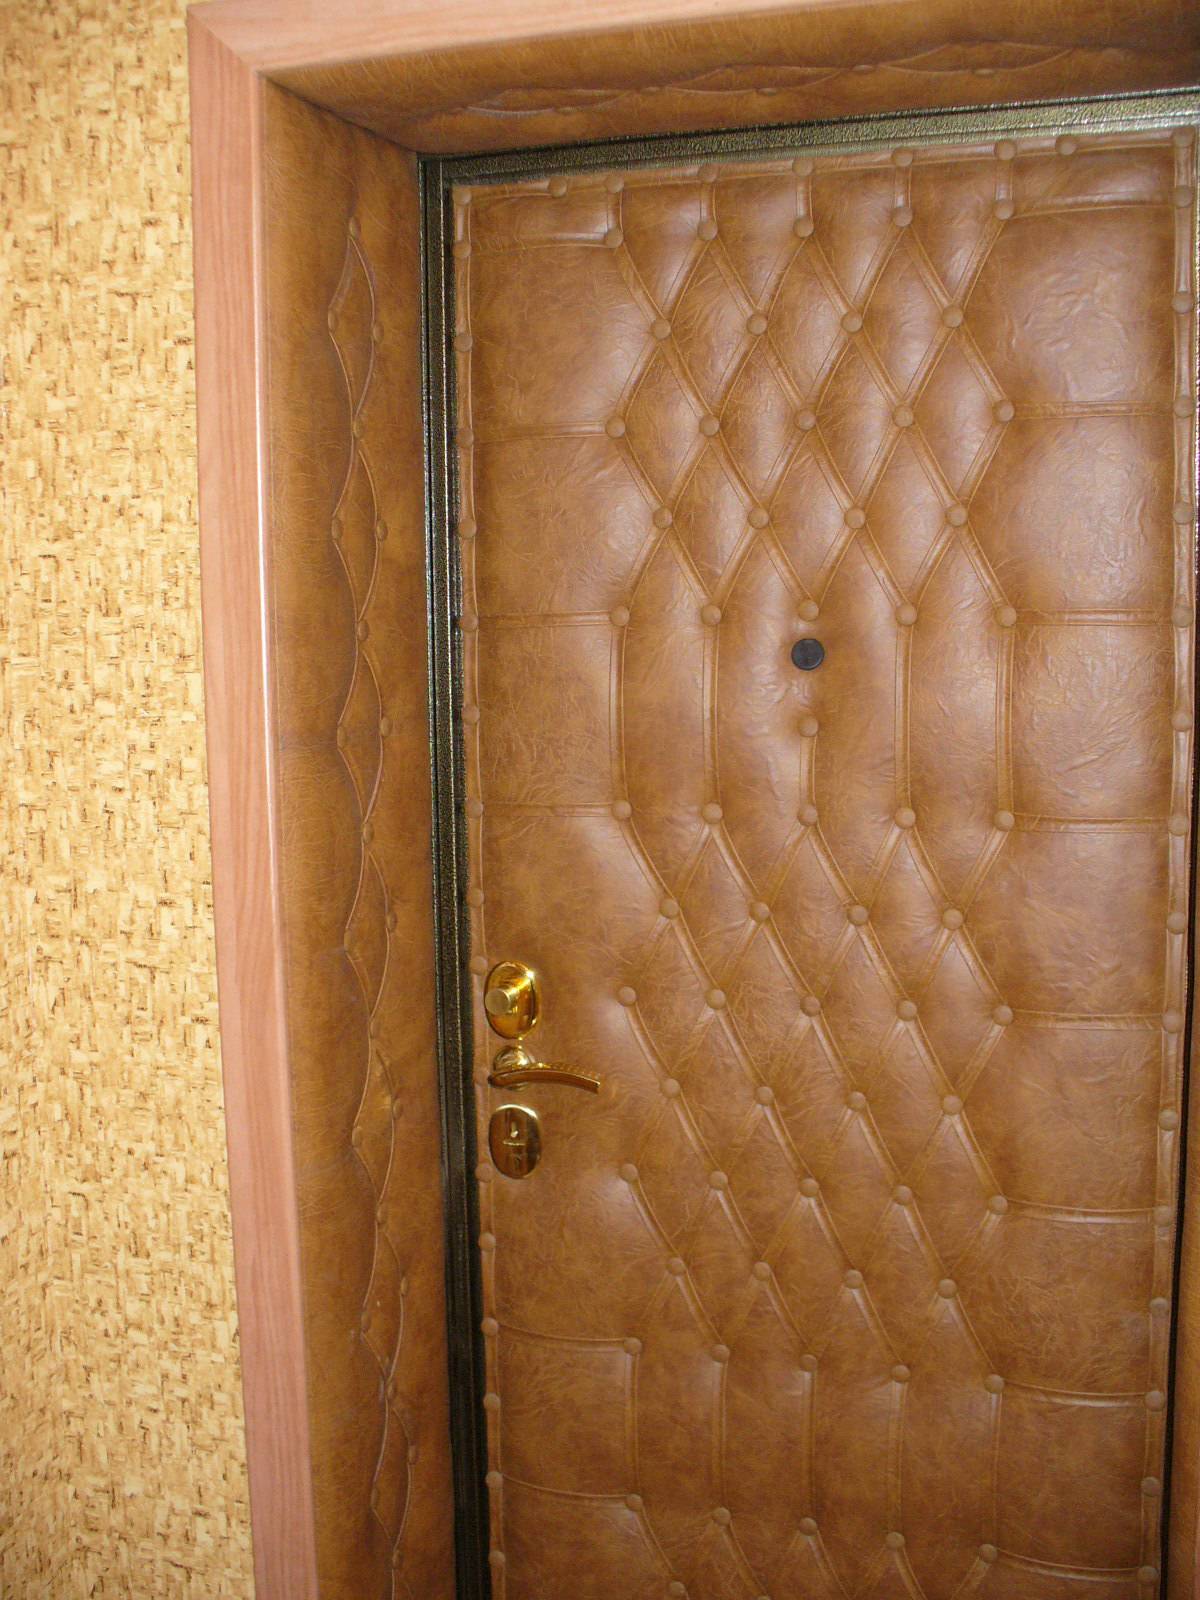 Как утеплить дверь в частном доме (металлическую, деревянную) своими руками